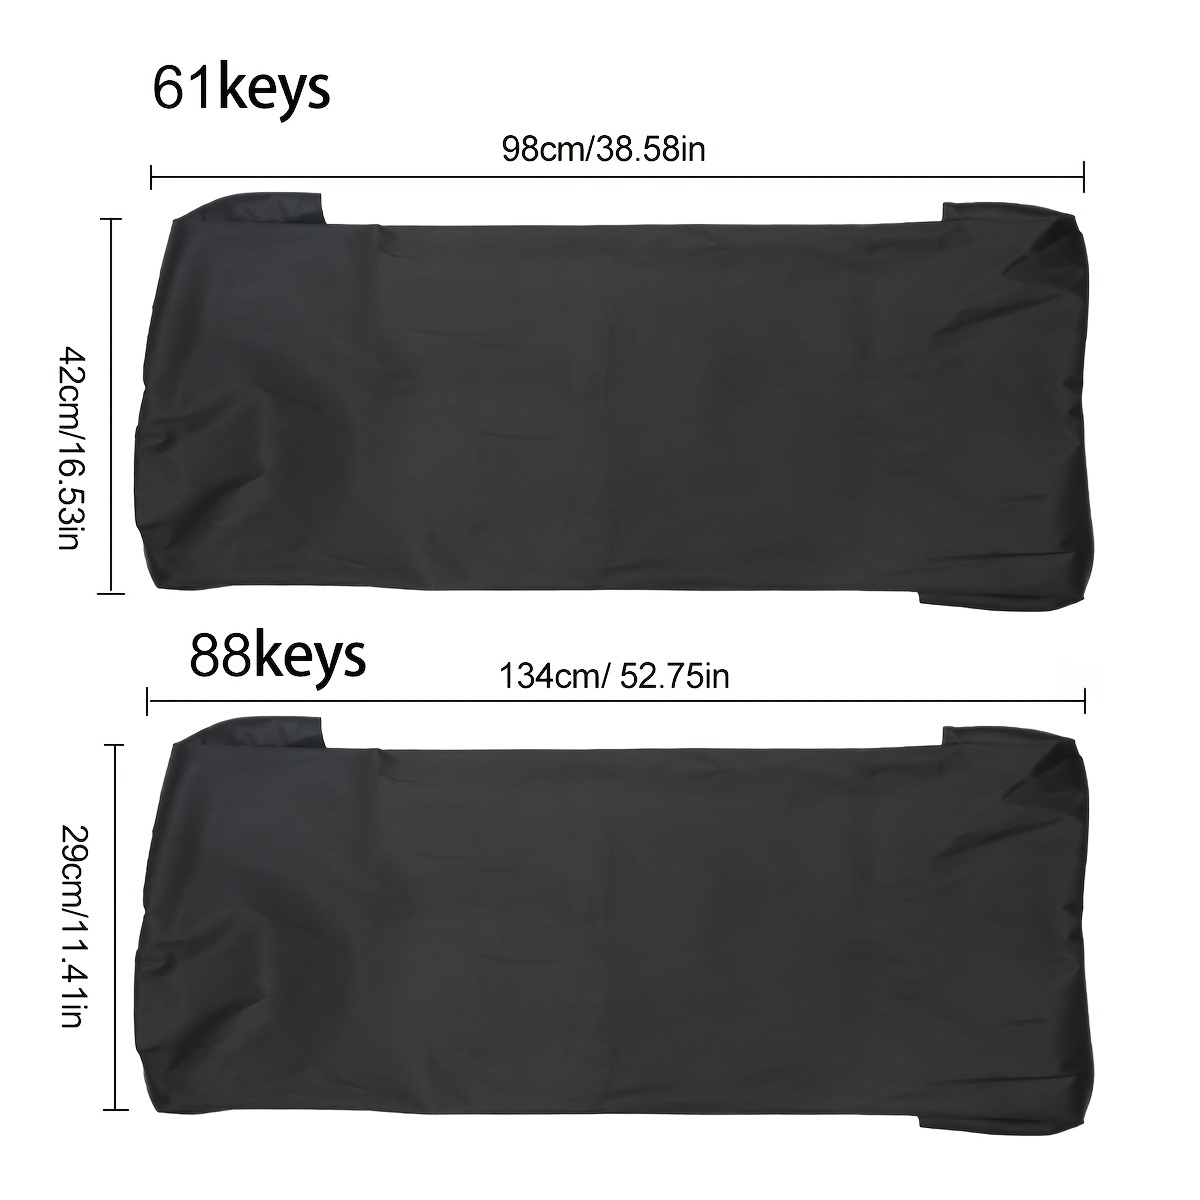 61/88 Keys Piano Keyboard Covers Wear-resistant Waterproof Dust